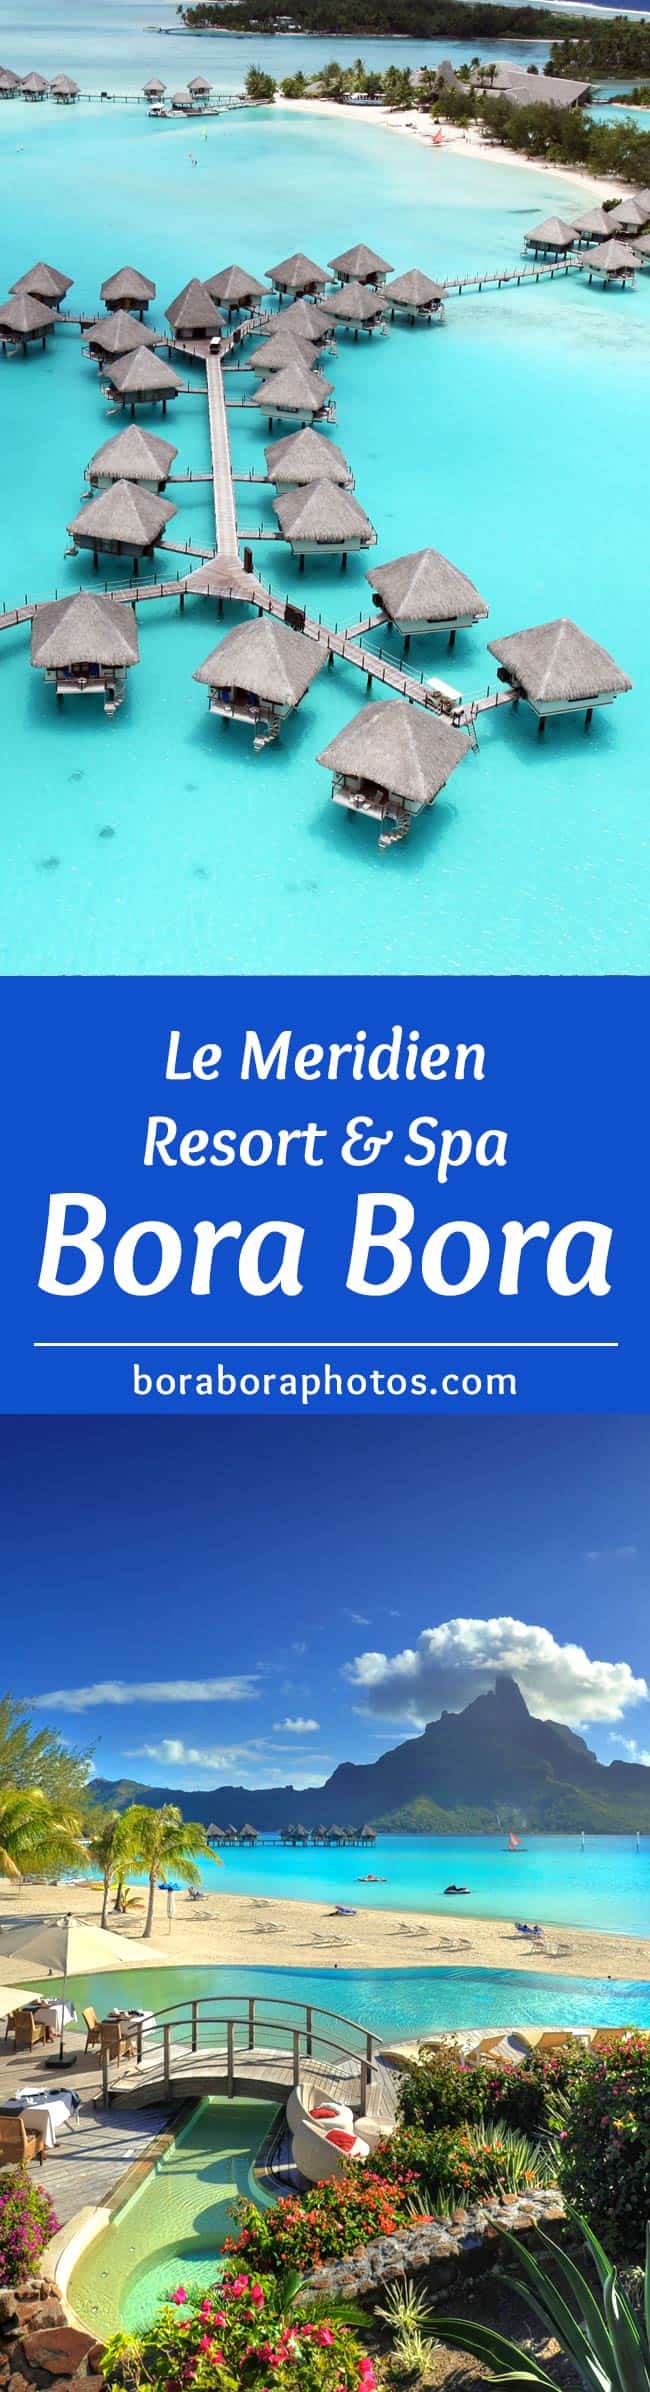 Le Meridien Bora Bora